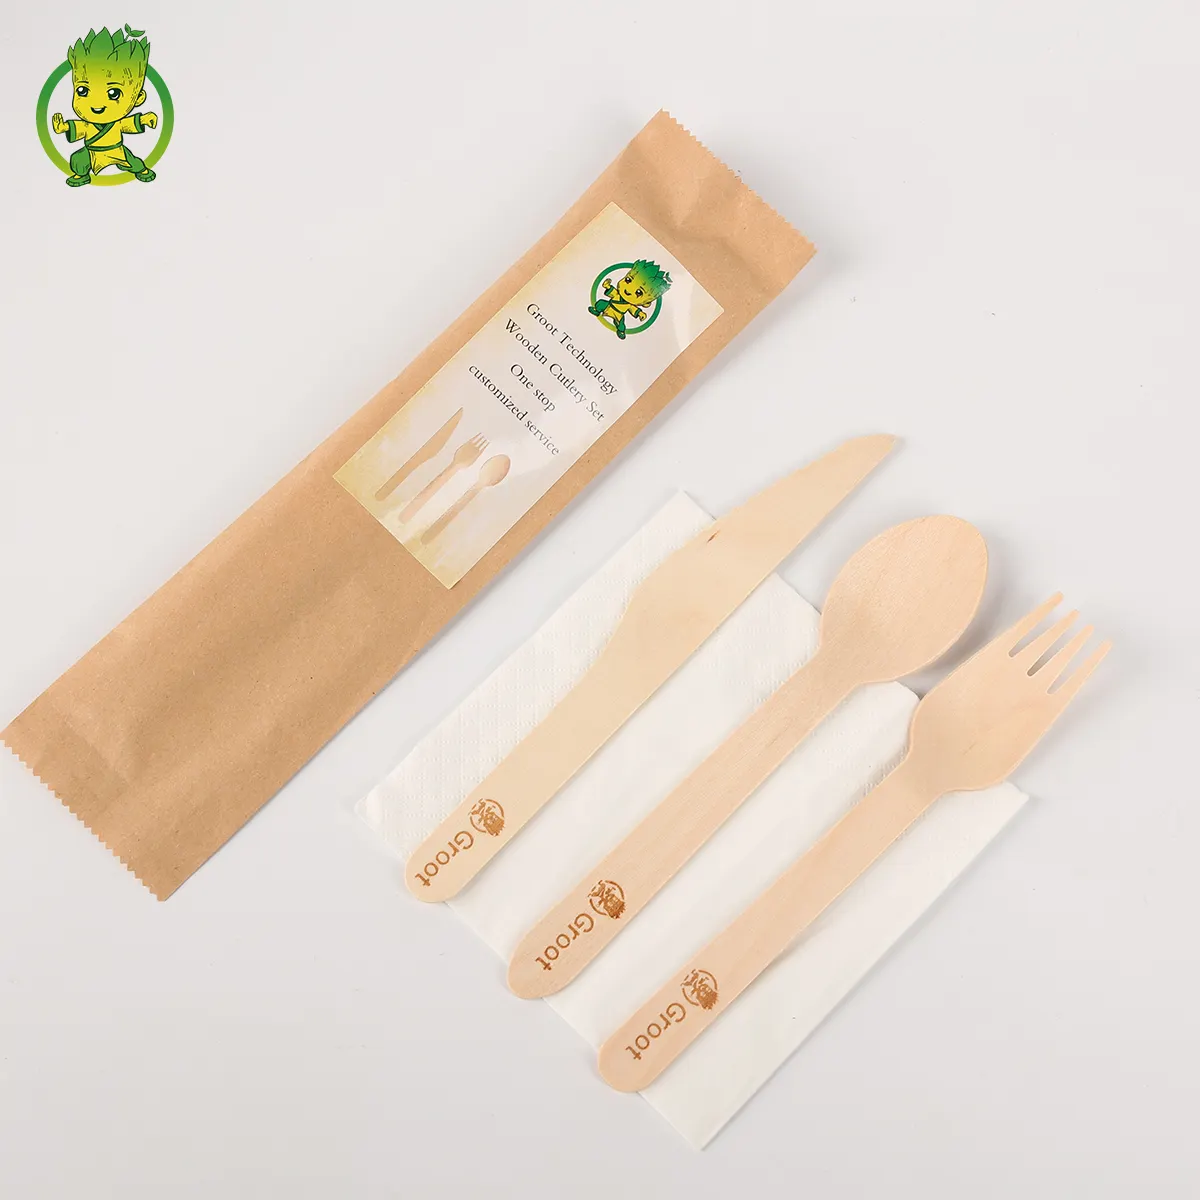 Vajilla biodegradable degradable de tamaño personalizado, respetuosa con el medio ambiente, cubiertos de madera, cucharas desechables, tenedores, juego de cuchillos